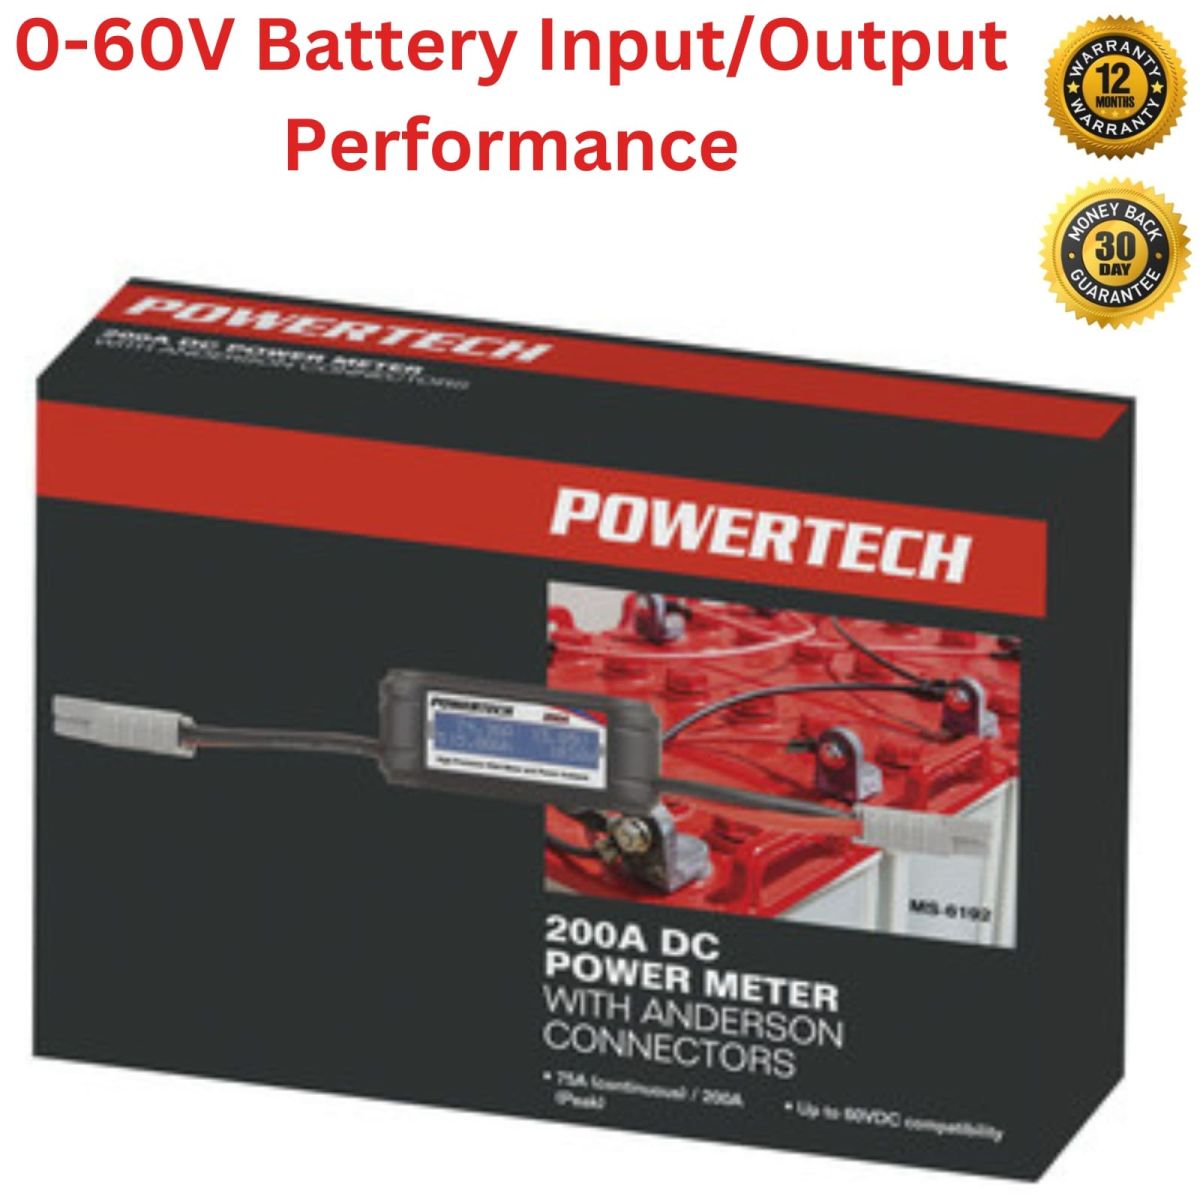 12v power meter, Battery capacity meter, Battery Capacity Tester 